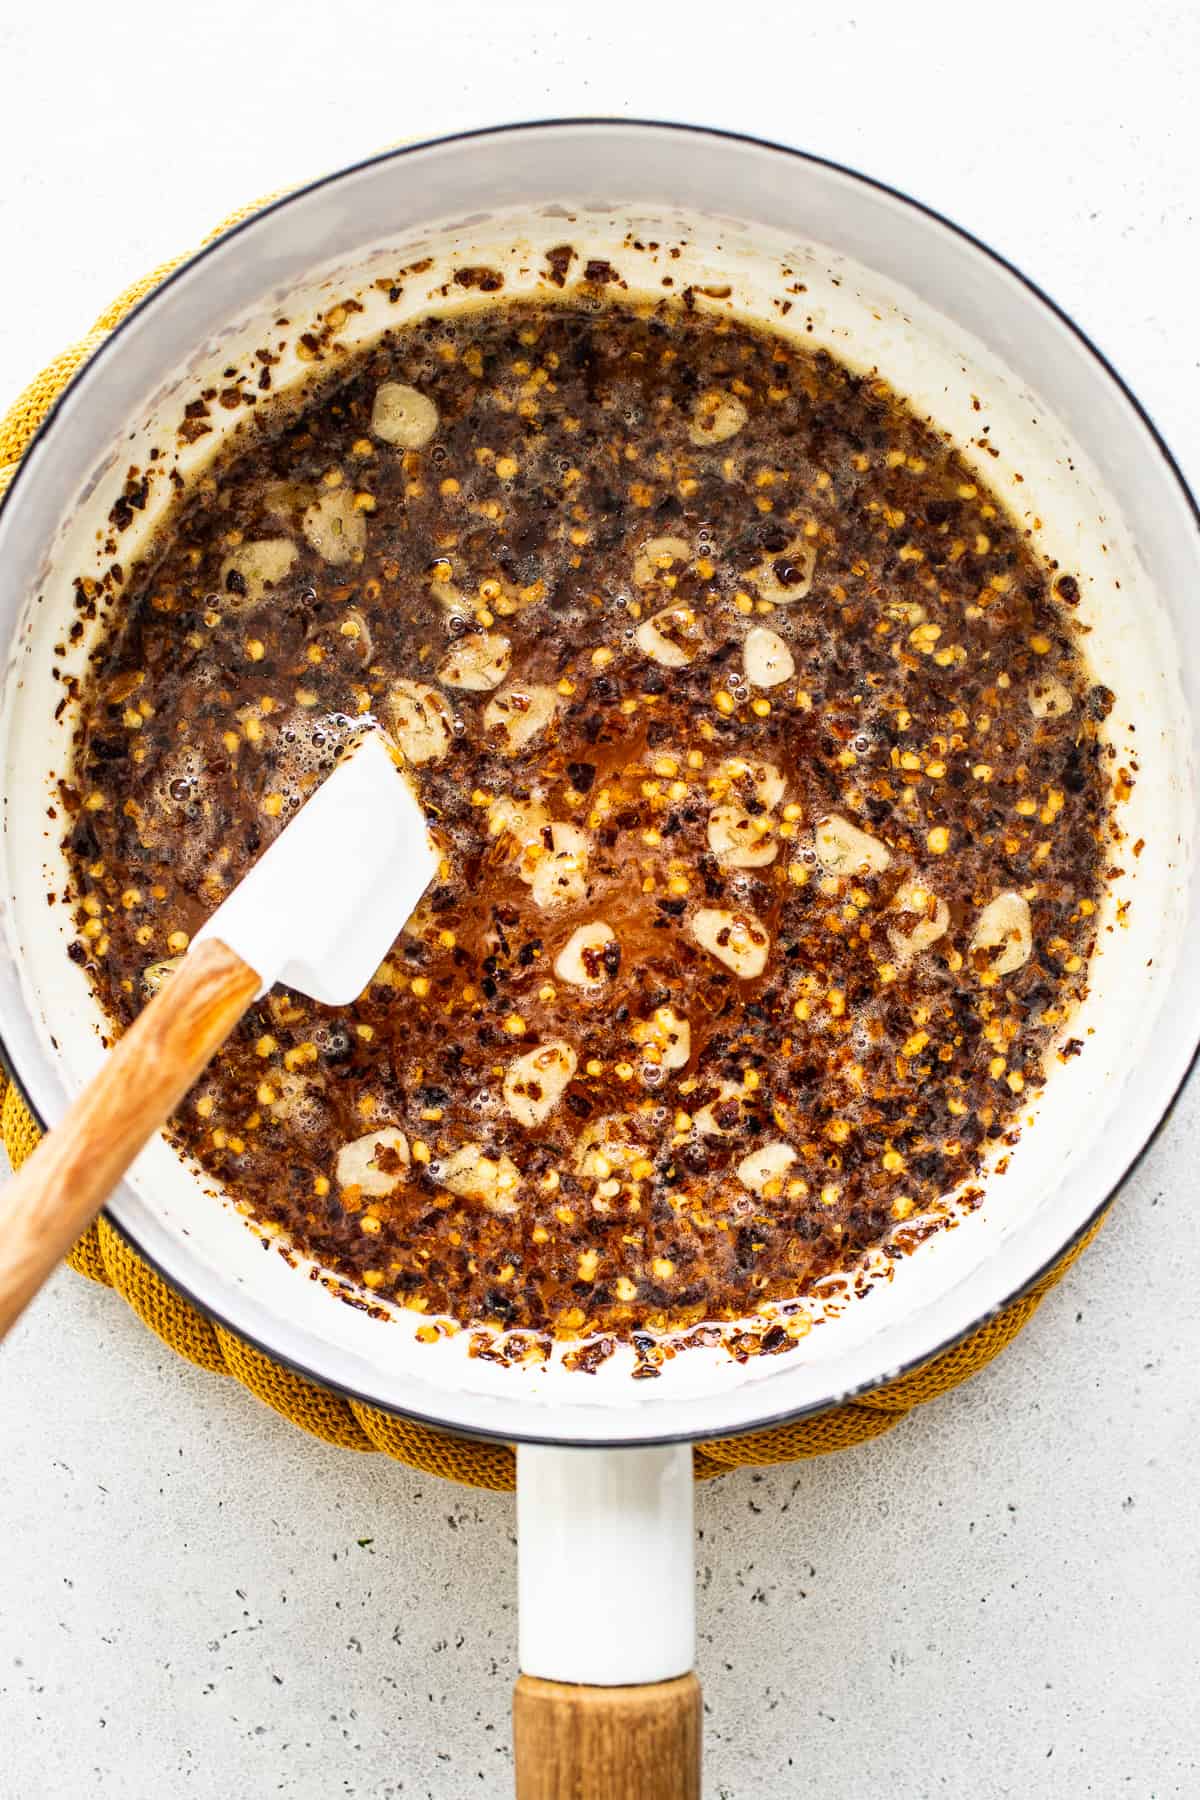 Hot honey in pan.